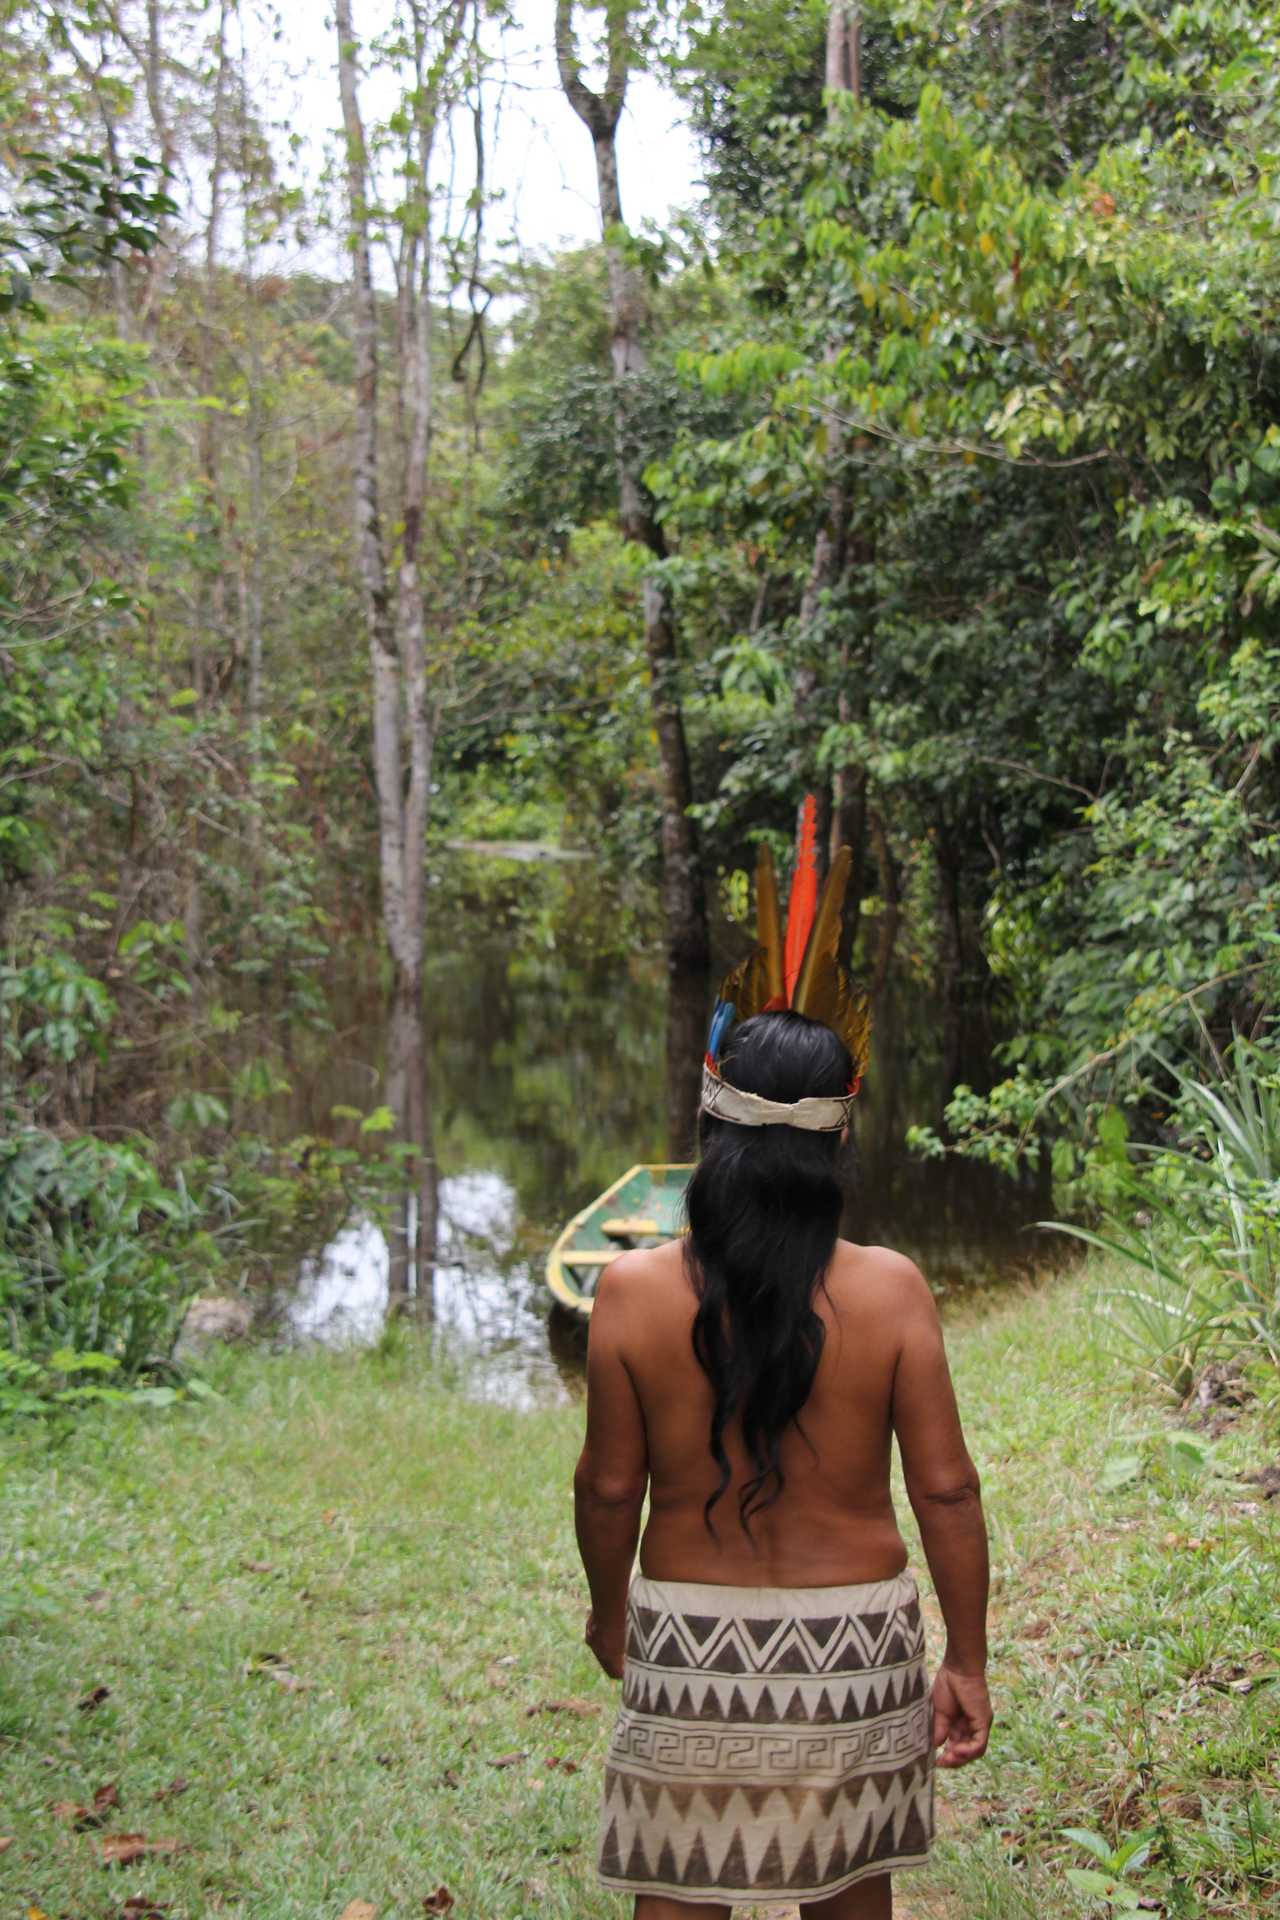 Femme d'une communauté en Amazonie péruvienne